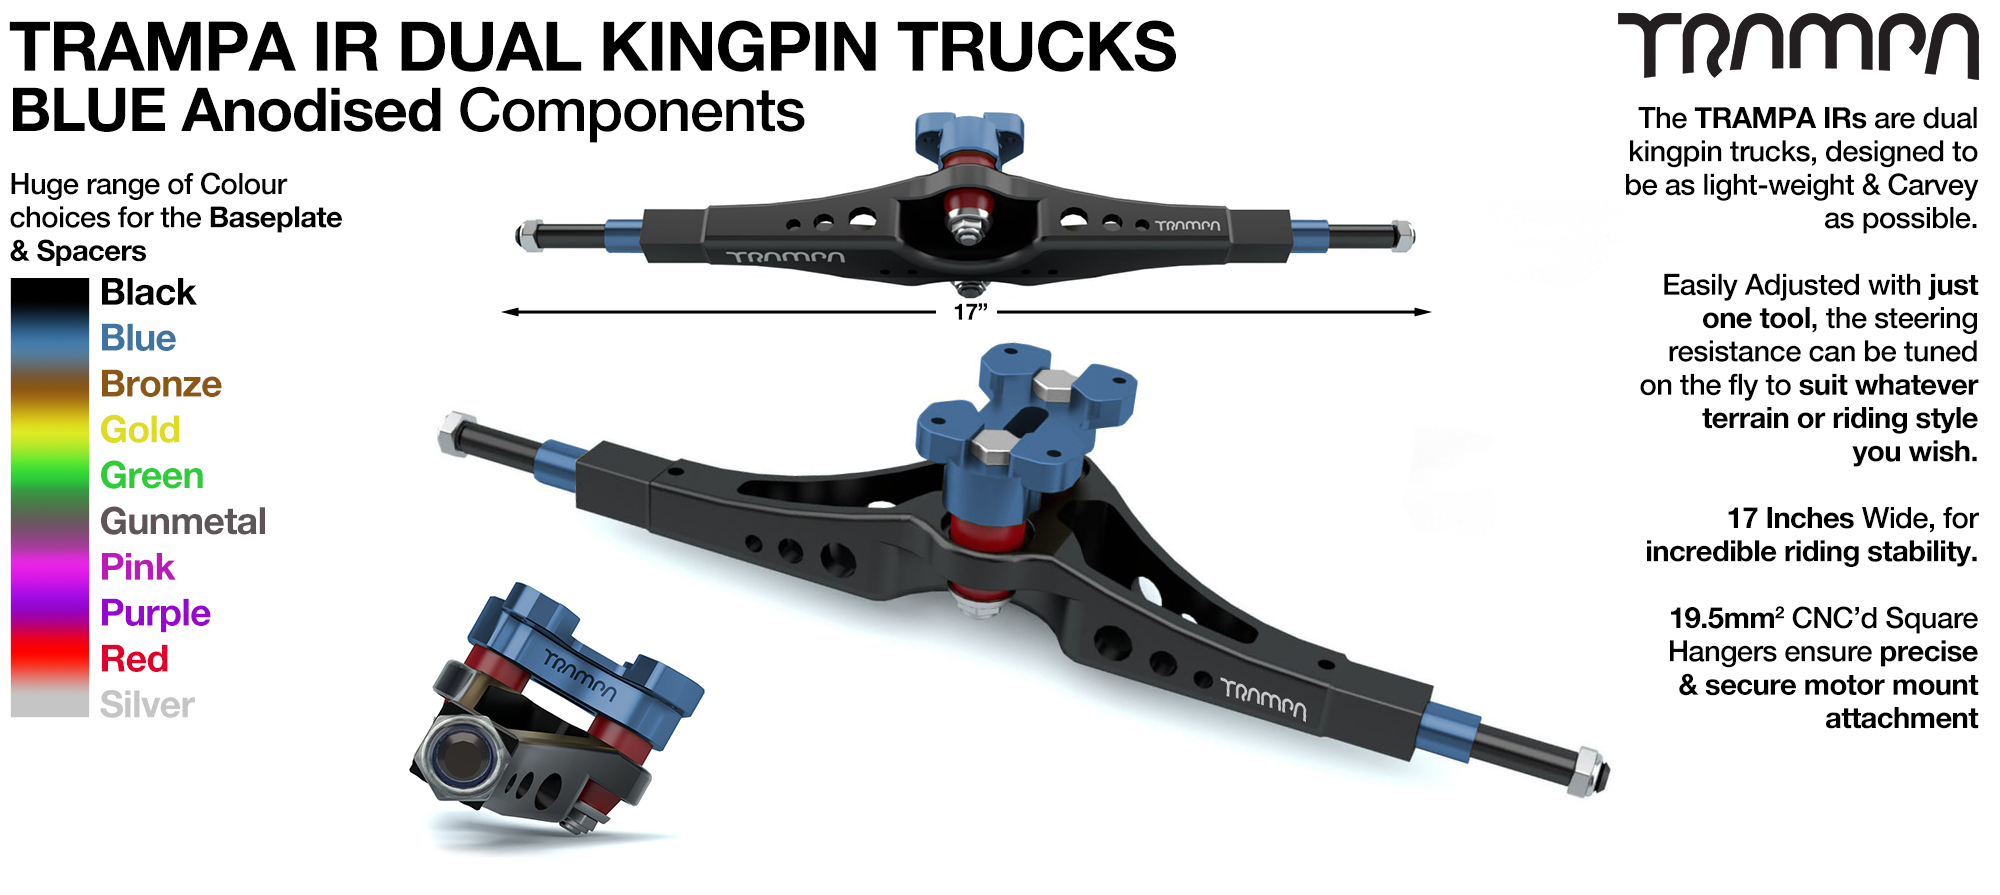 TRAMPA IR Double Kingpinned Skate Style Trucks fit every 19.1mm Motor Mount TRAMPA offers - BLUE